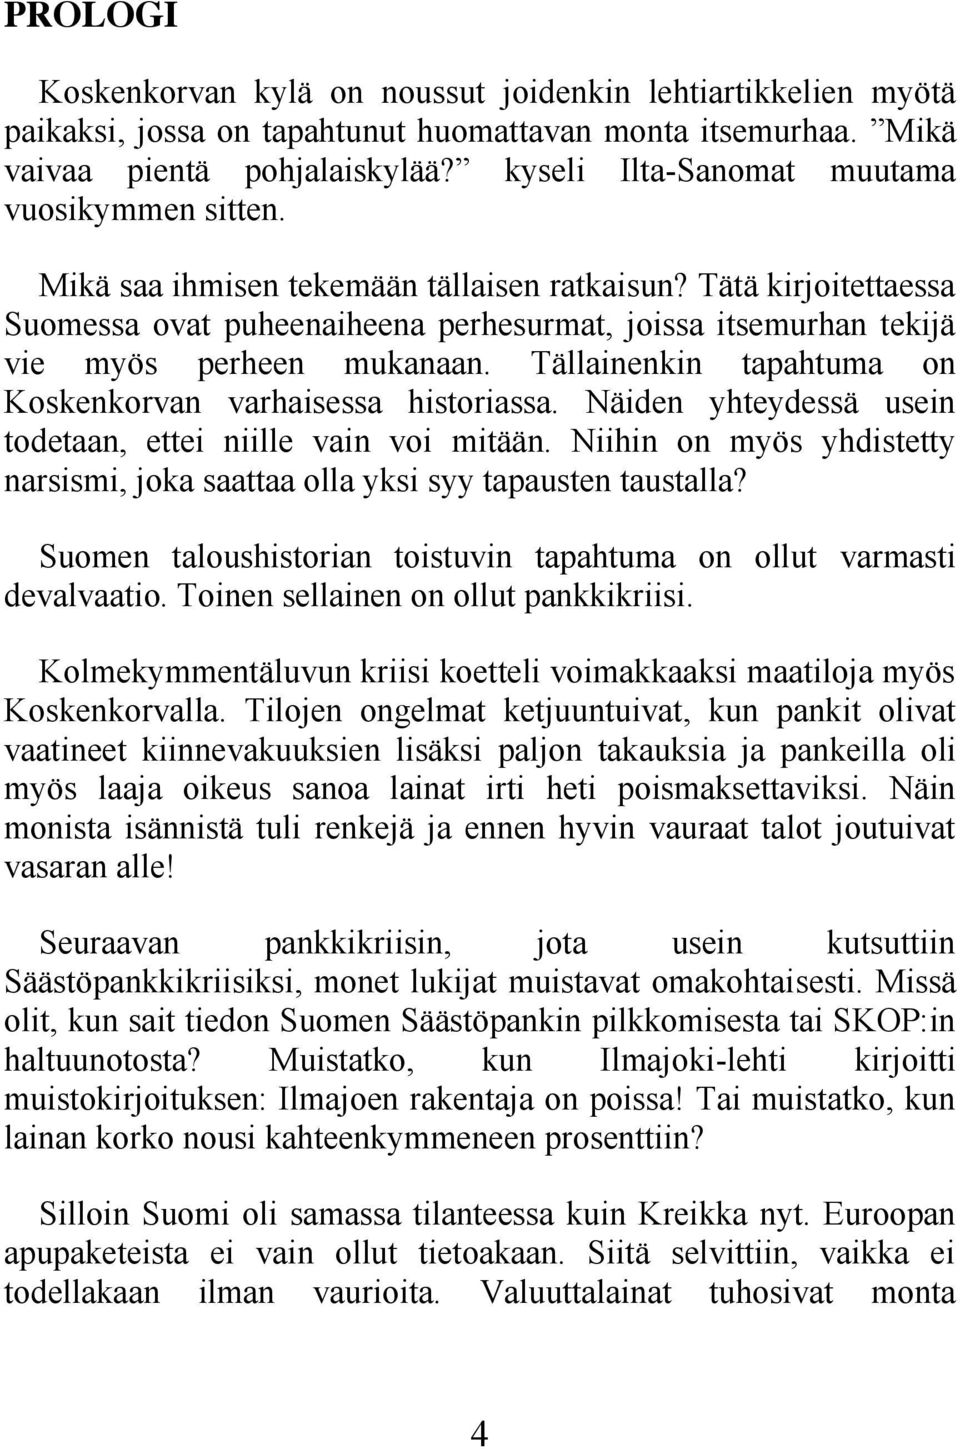 Tätä kirjoitettaessa Suomessa ovat puheenaiheena perhesurmat, joissa itsemurhan tekijä vie myös perheen mukanaan. Tällainenkin tapahtuma on Koskenkorvan varhaisessa historiassa.